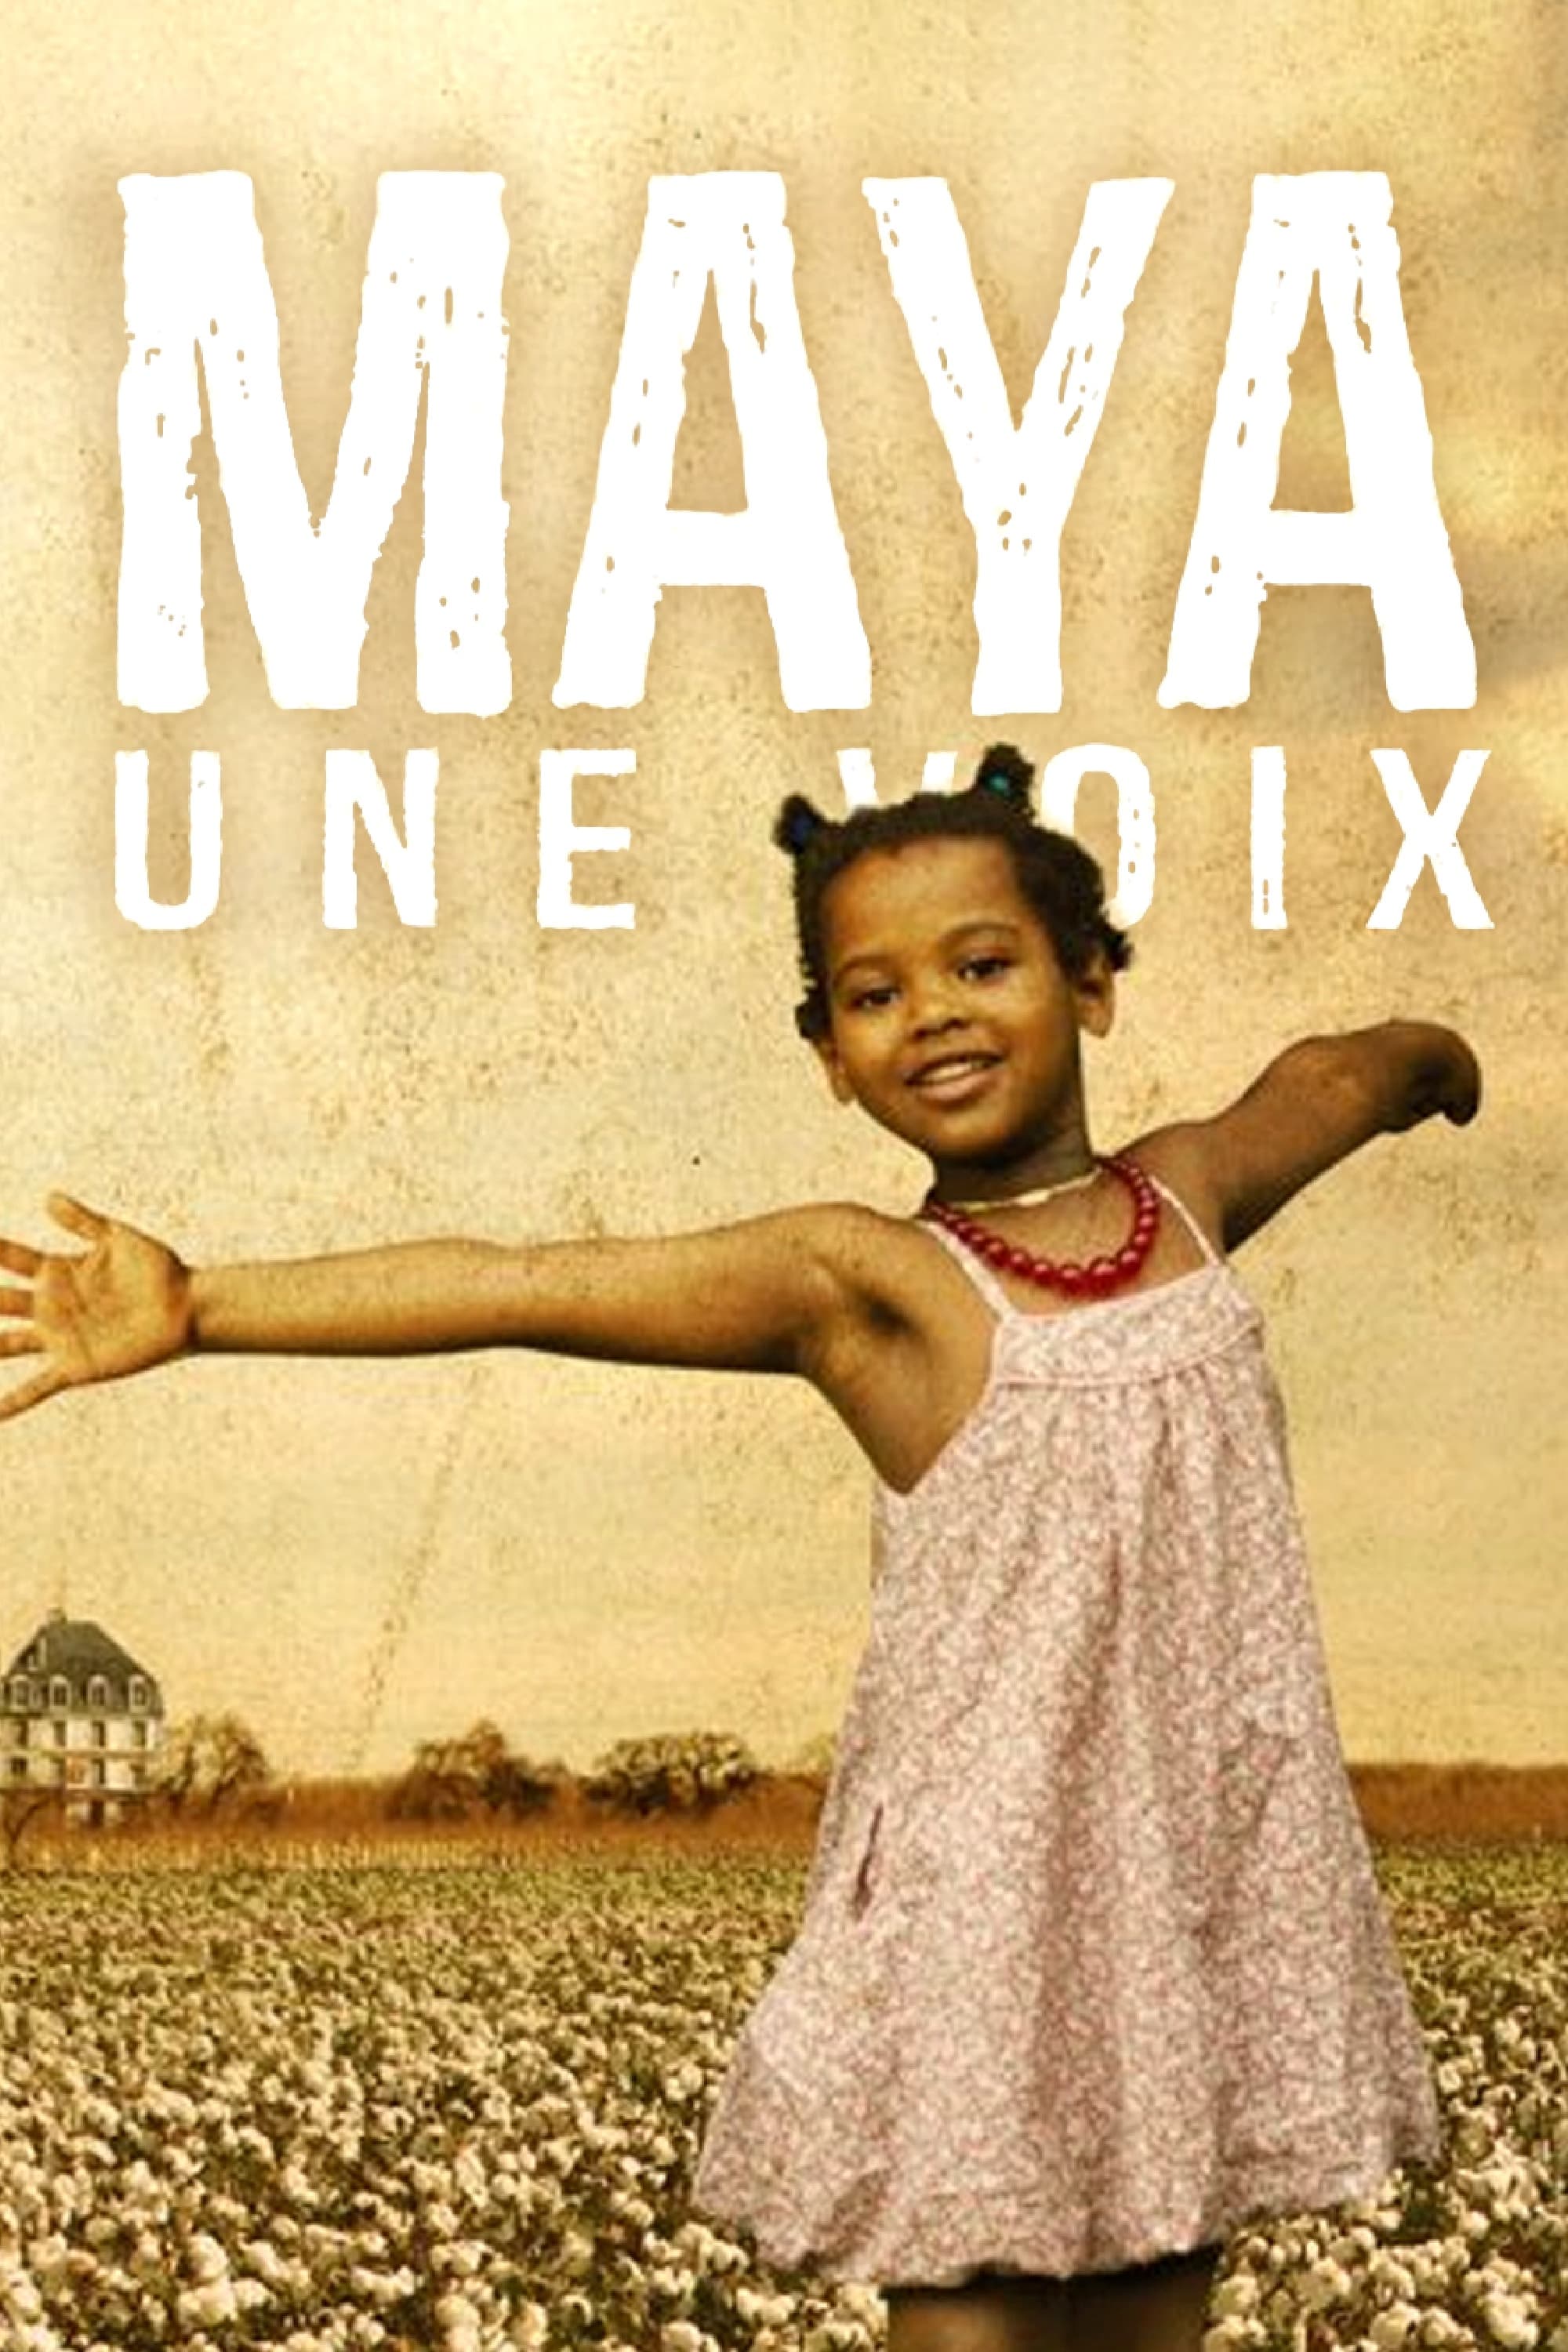 Maya, une Voix